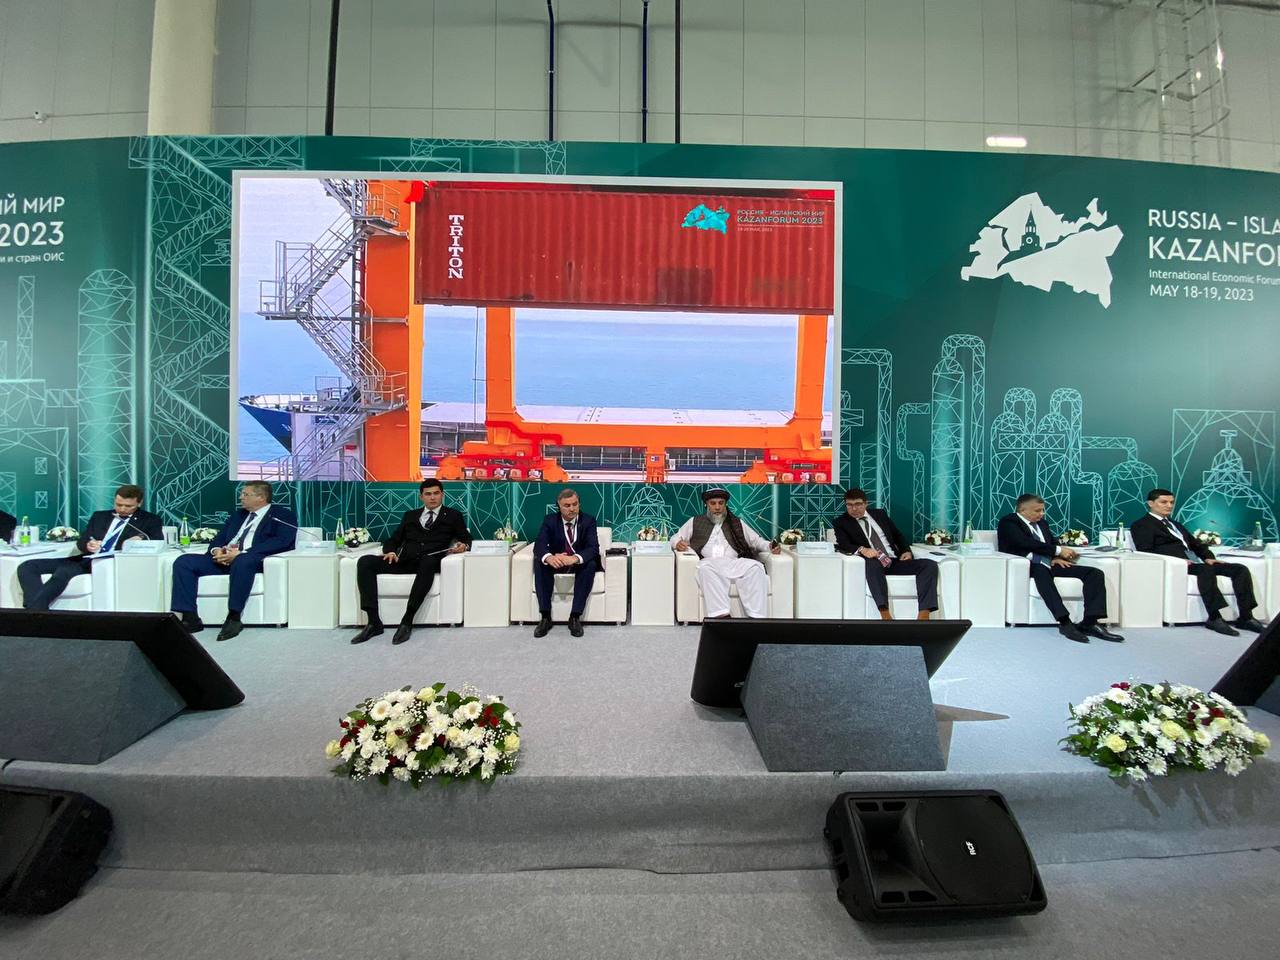 Ульяновская область нашла новых партнеров и расширила экспорт: итоги международного форума в Казани